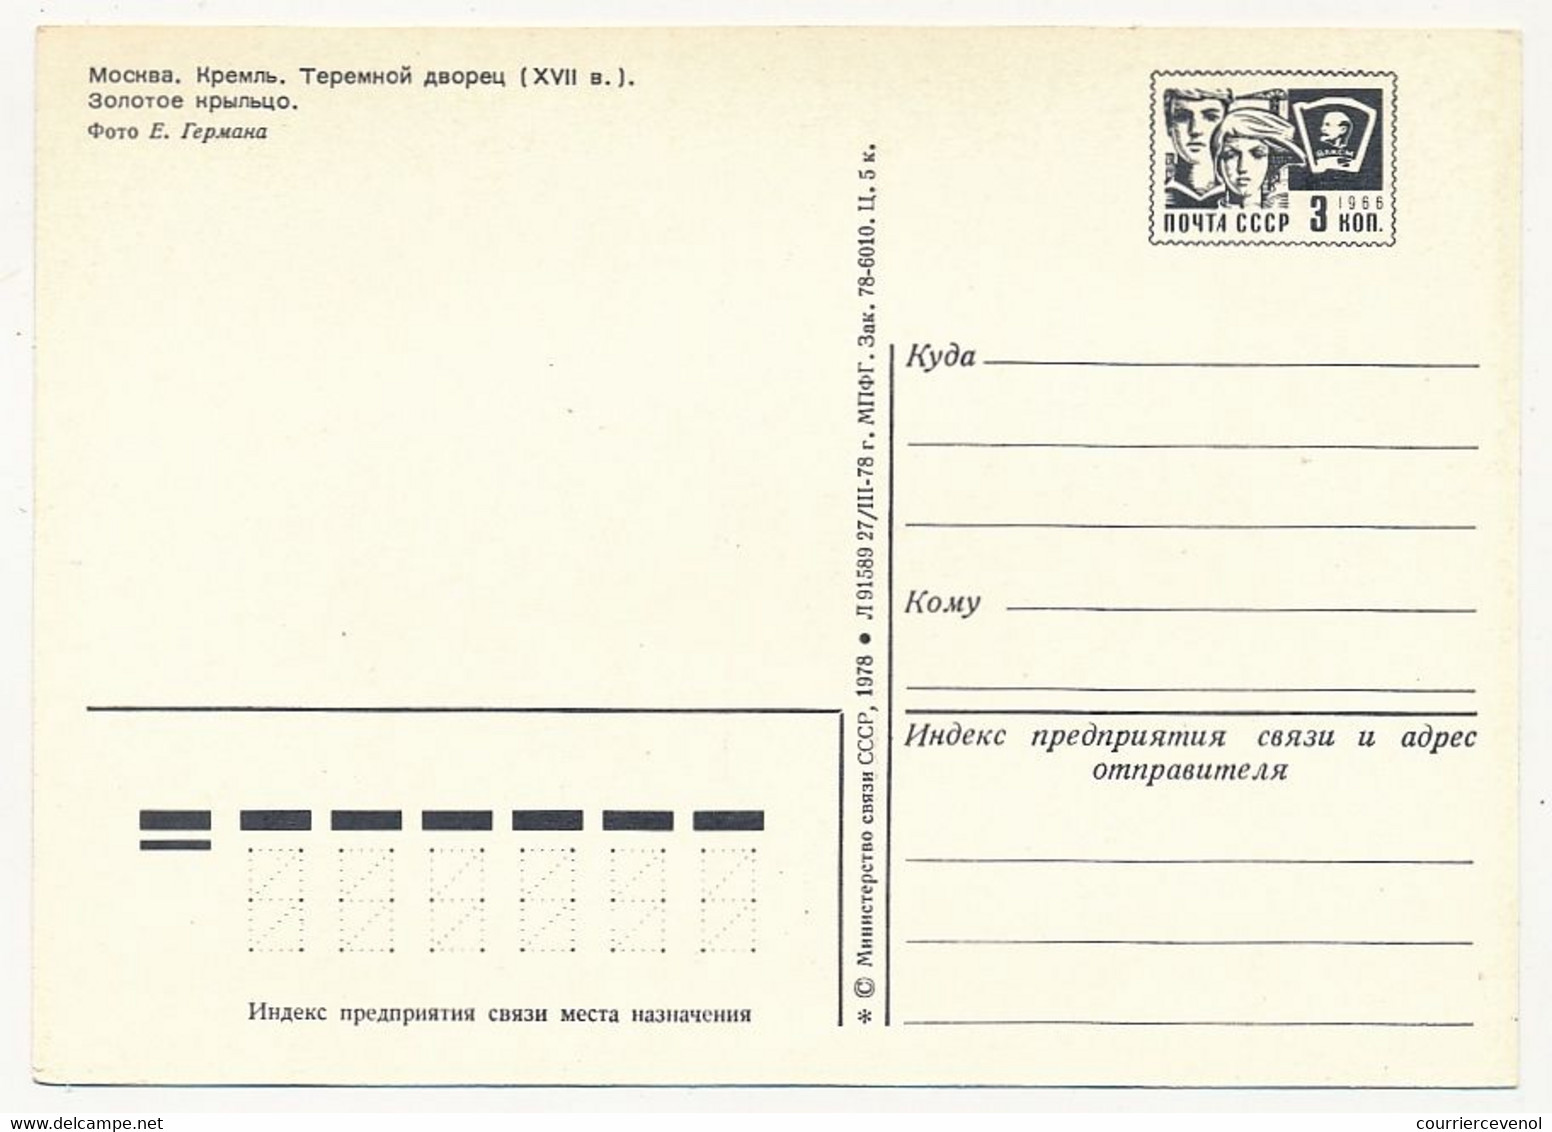 URSS - 34 entiers Cartes postales touristique de MOSCOU - Monuments divers - 10 timbre rouge, 24 timbre noir